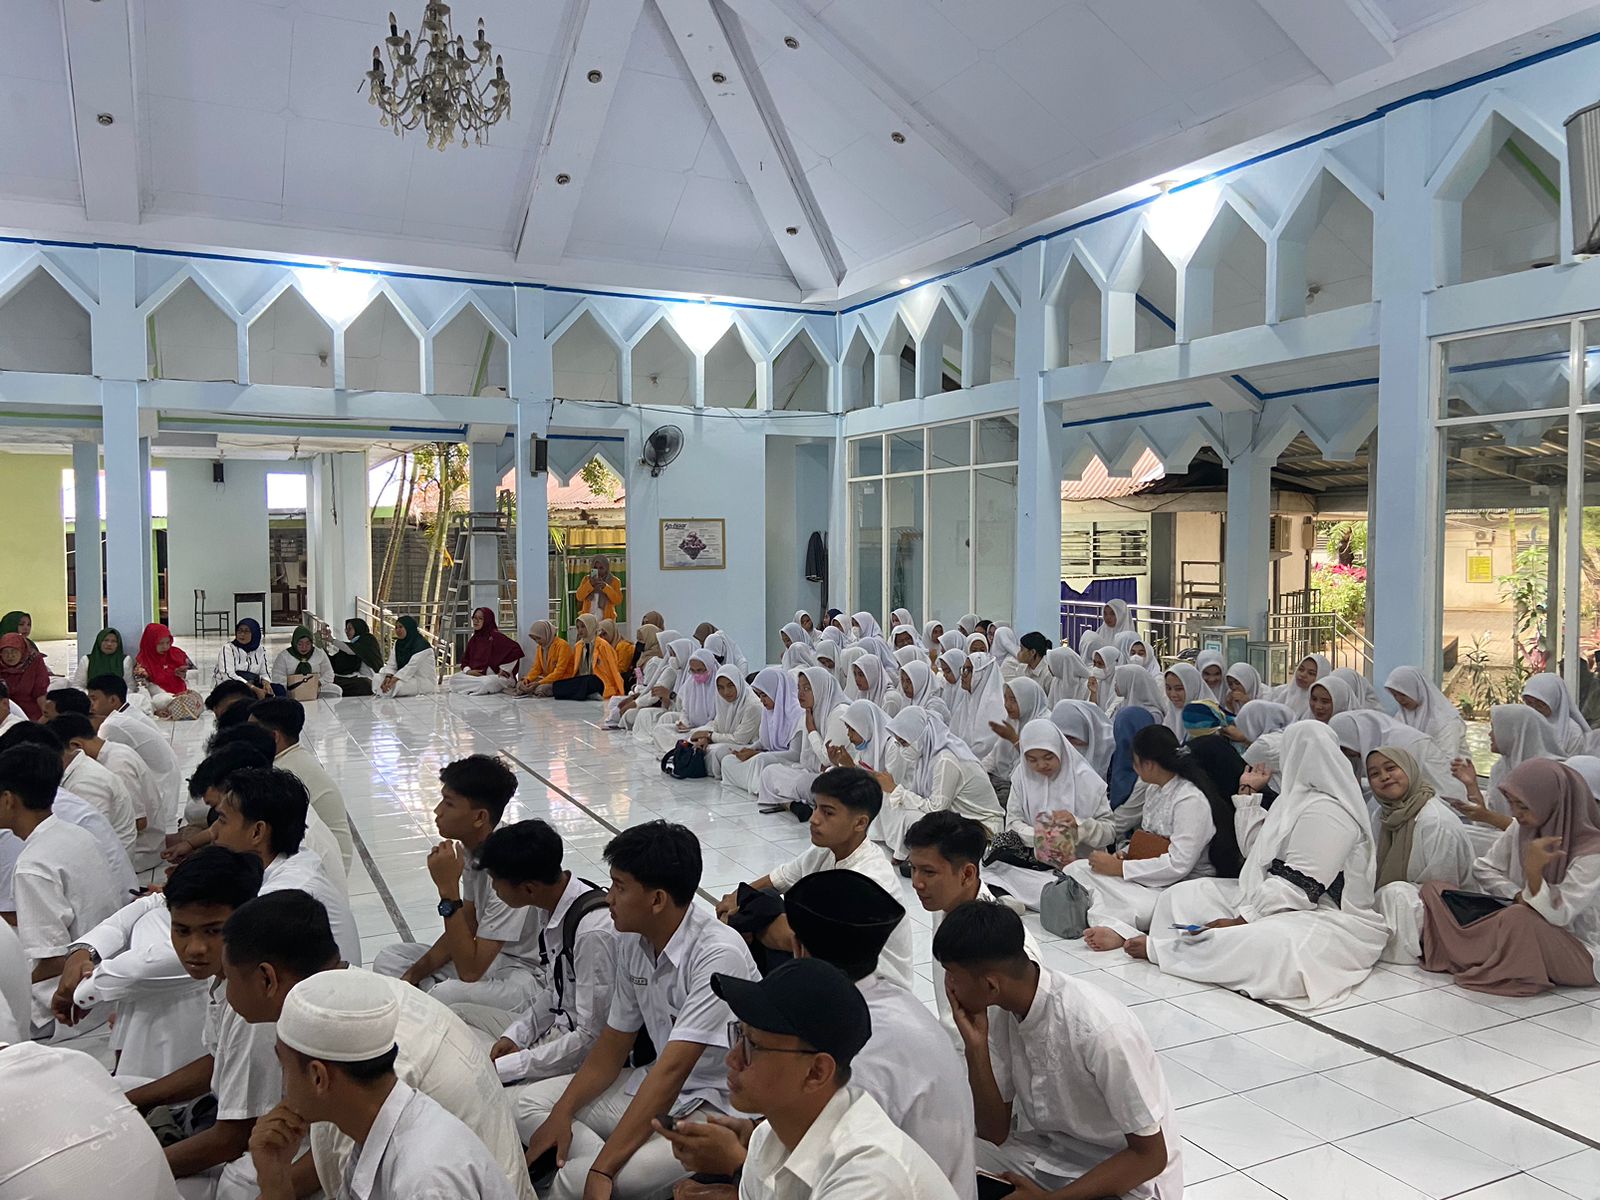 SMAN 1 Makassar Laksanakan Tahfizhul Quran Juz 30, Dapat Sambutan Positif dari Warga Sekolah